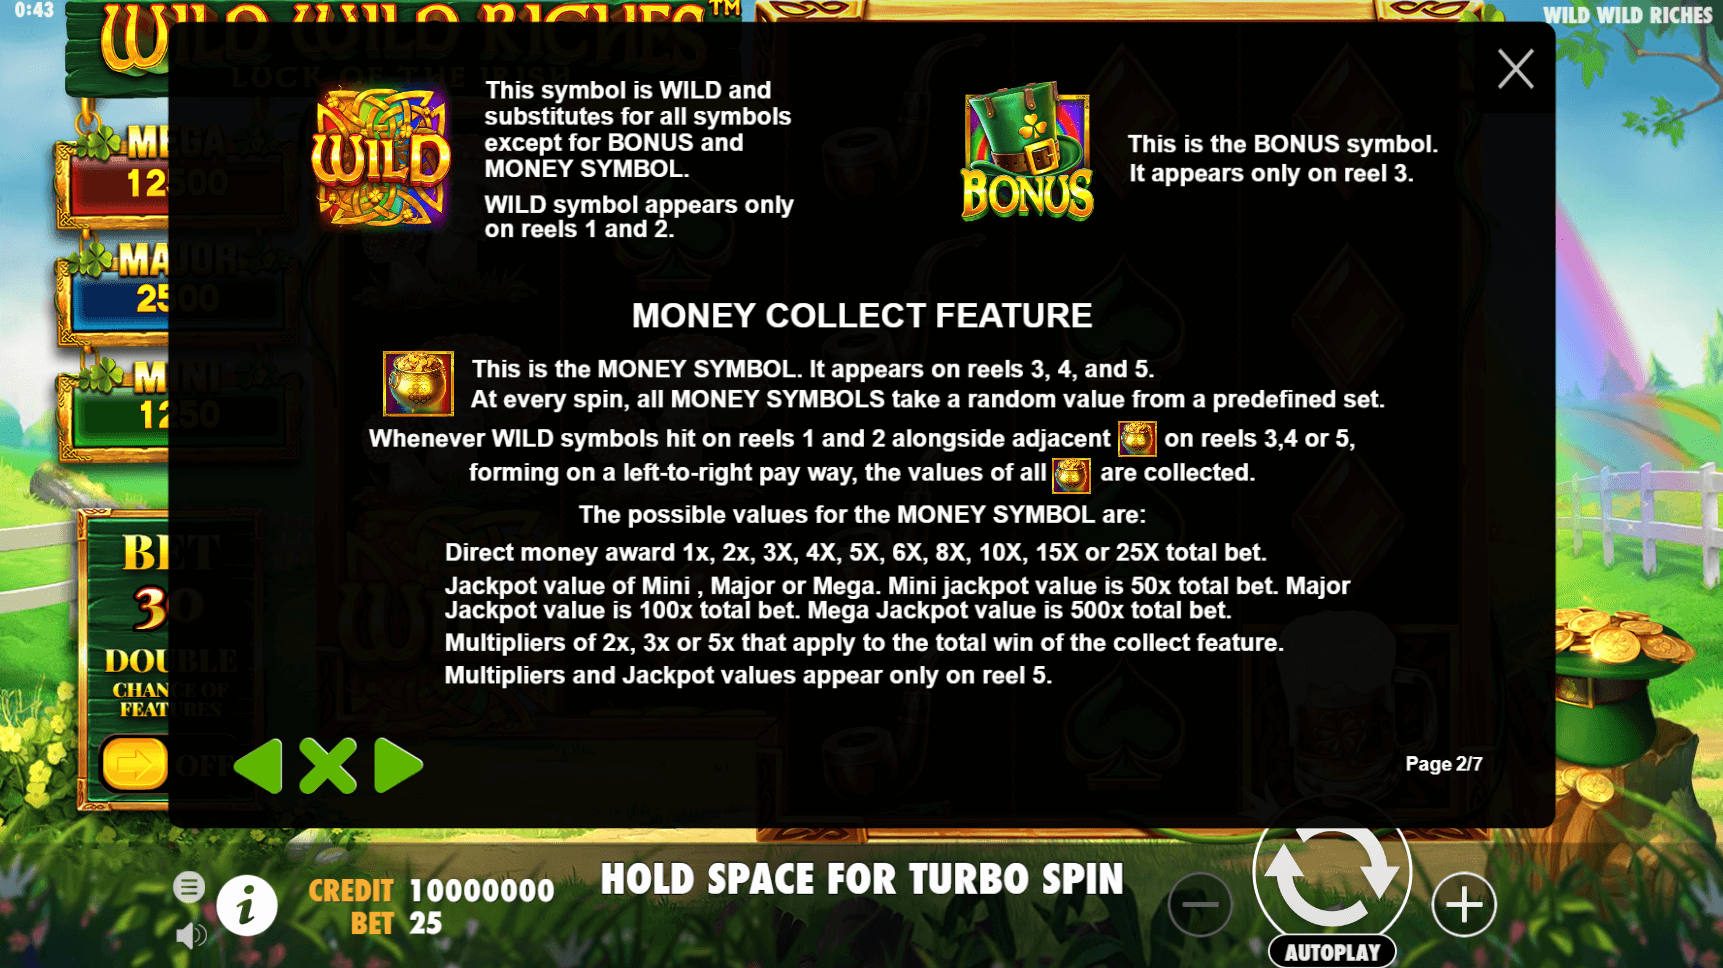 wild wild riches slot machine detail image 1